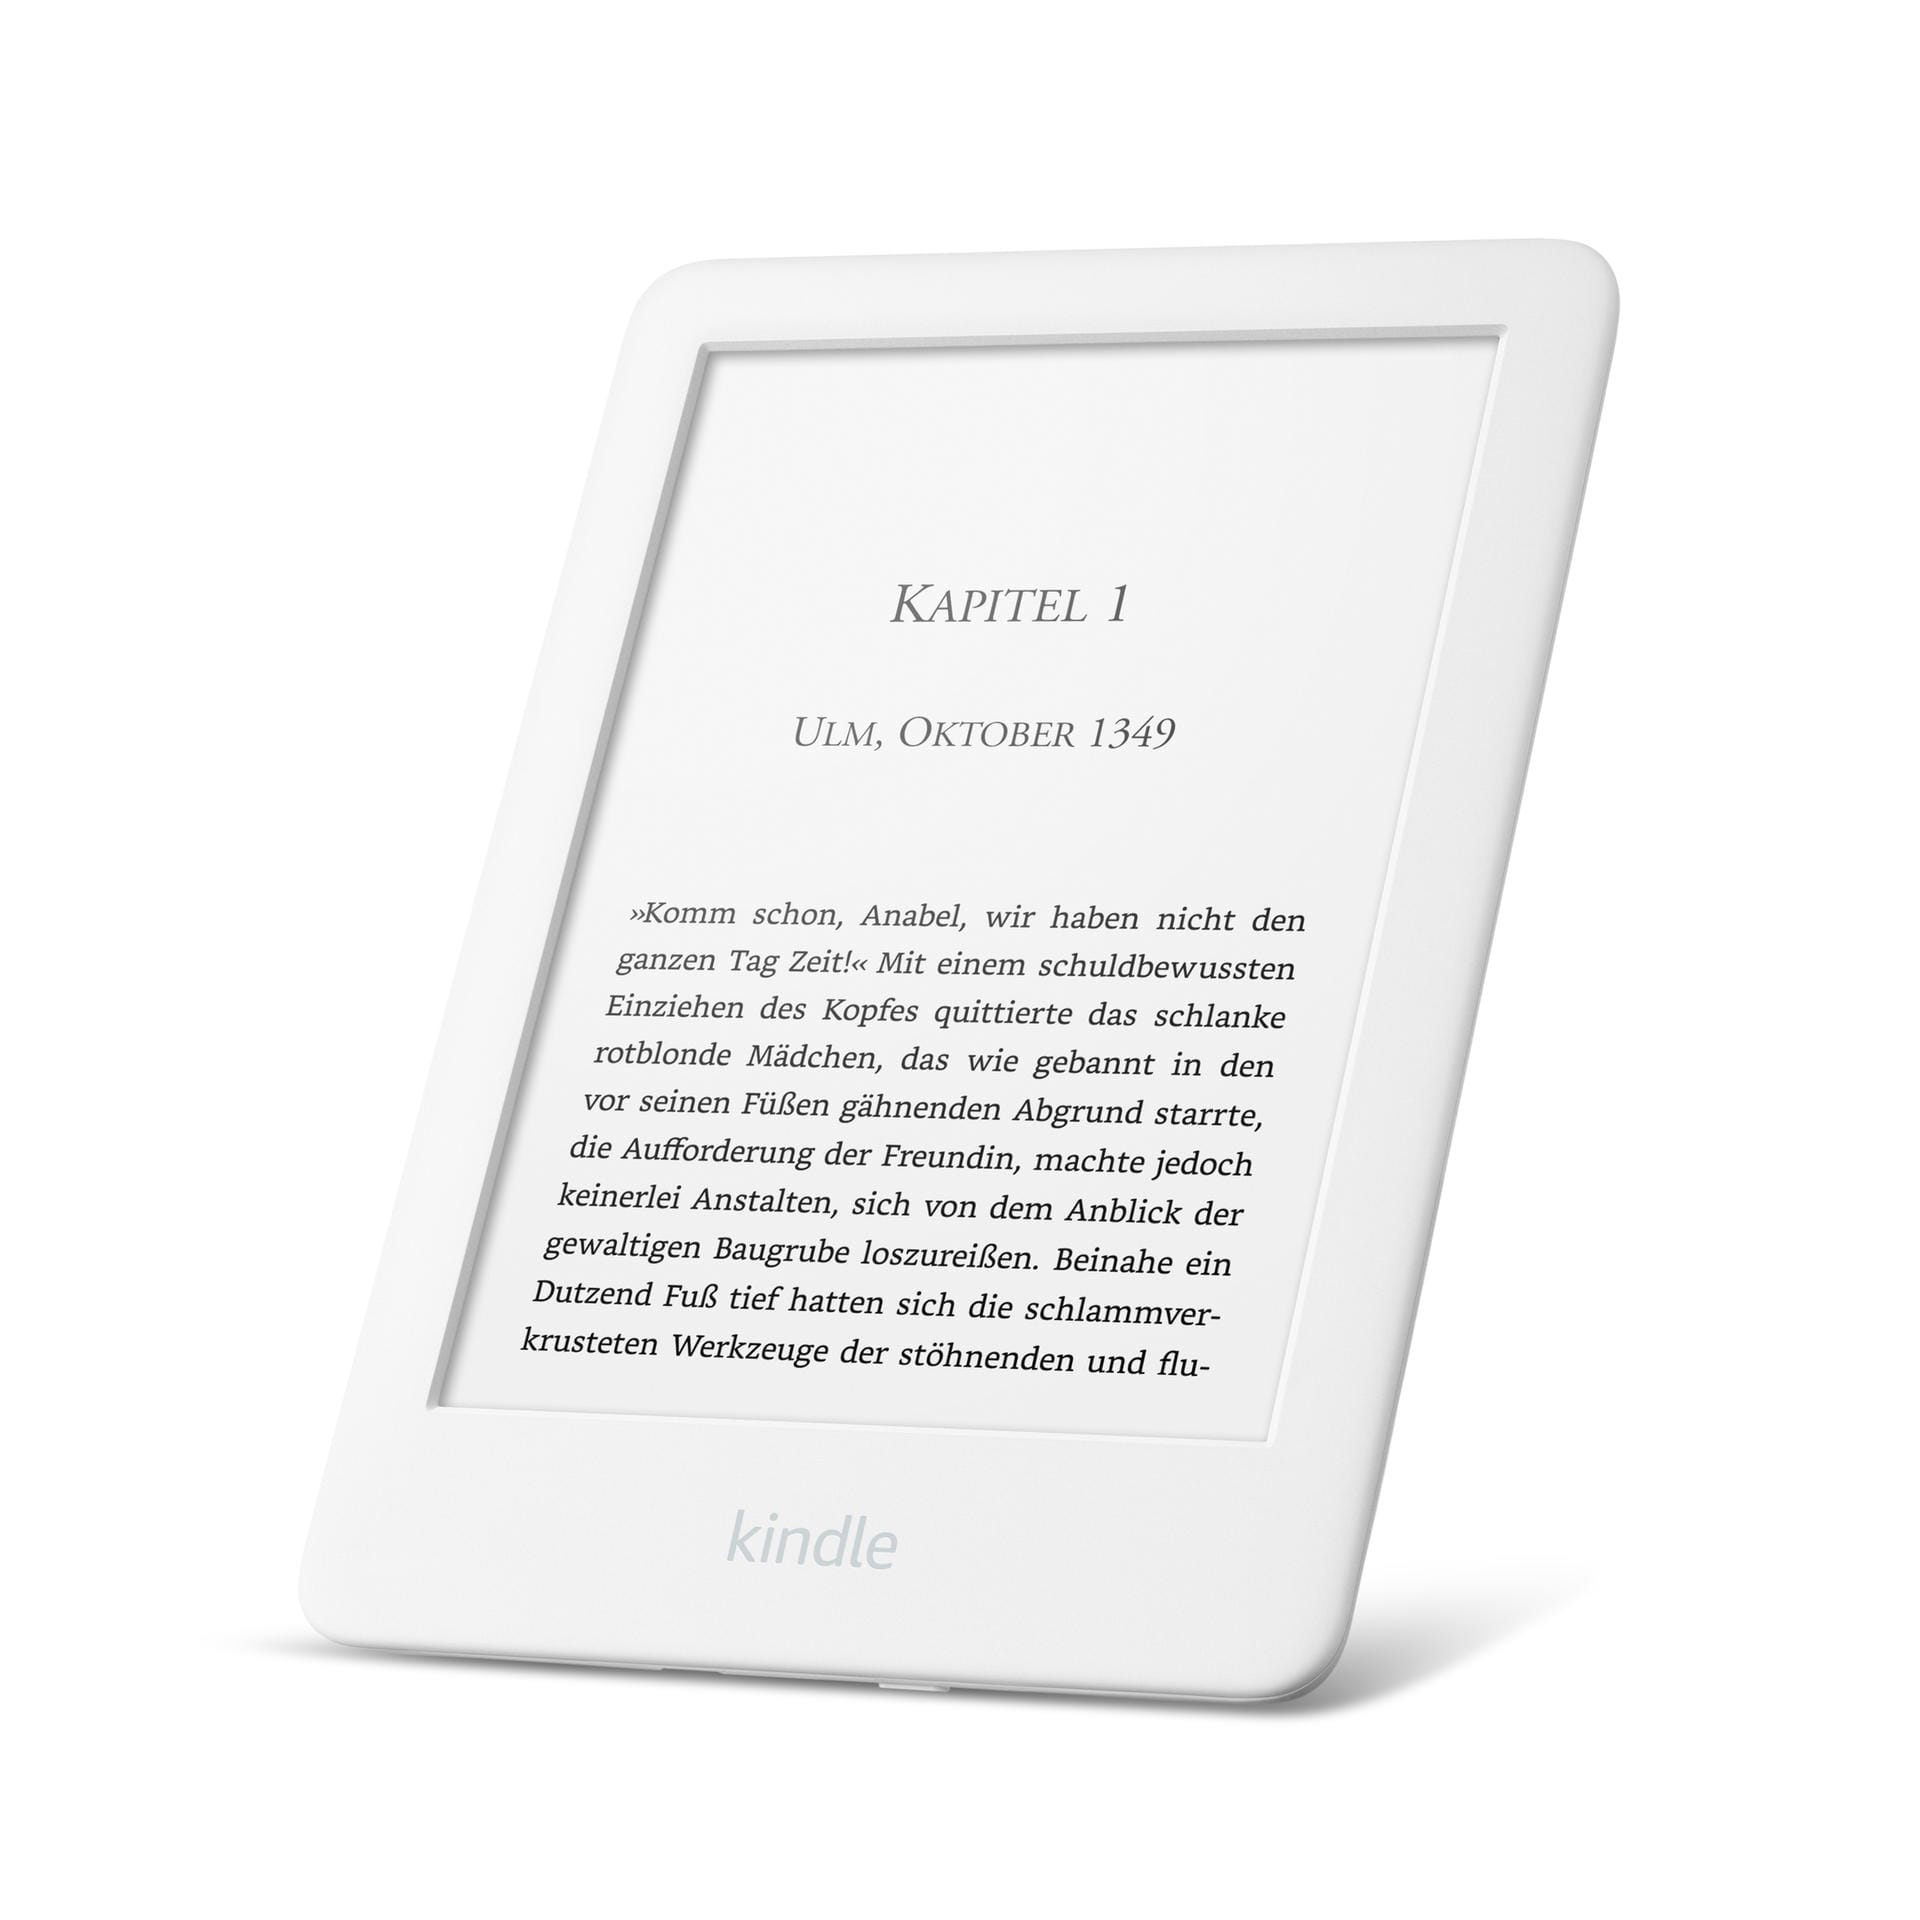 Amazon präsentiert seinen neuen Kindle. Das Gerät kostet 79,99 Euro. Es kommt in den Farben Weiß...